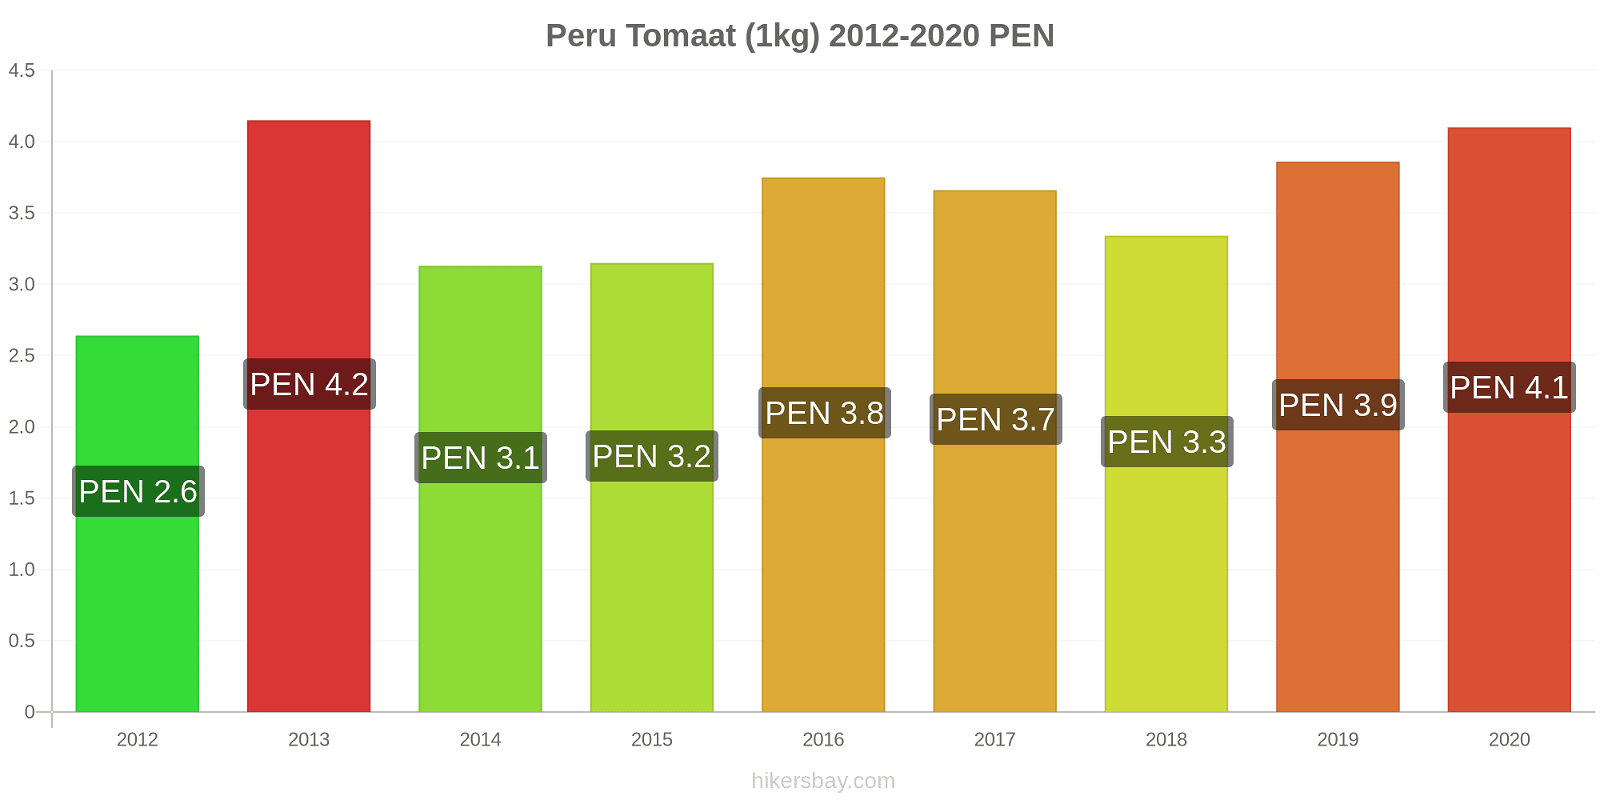 Peru prijswijzigingen Tomaat (1kg) hikersbay.com